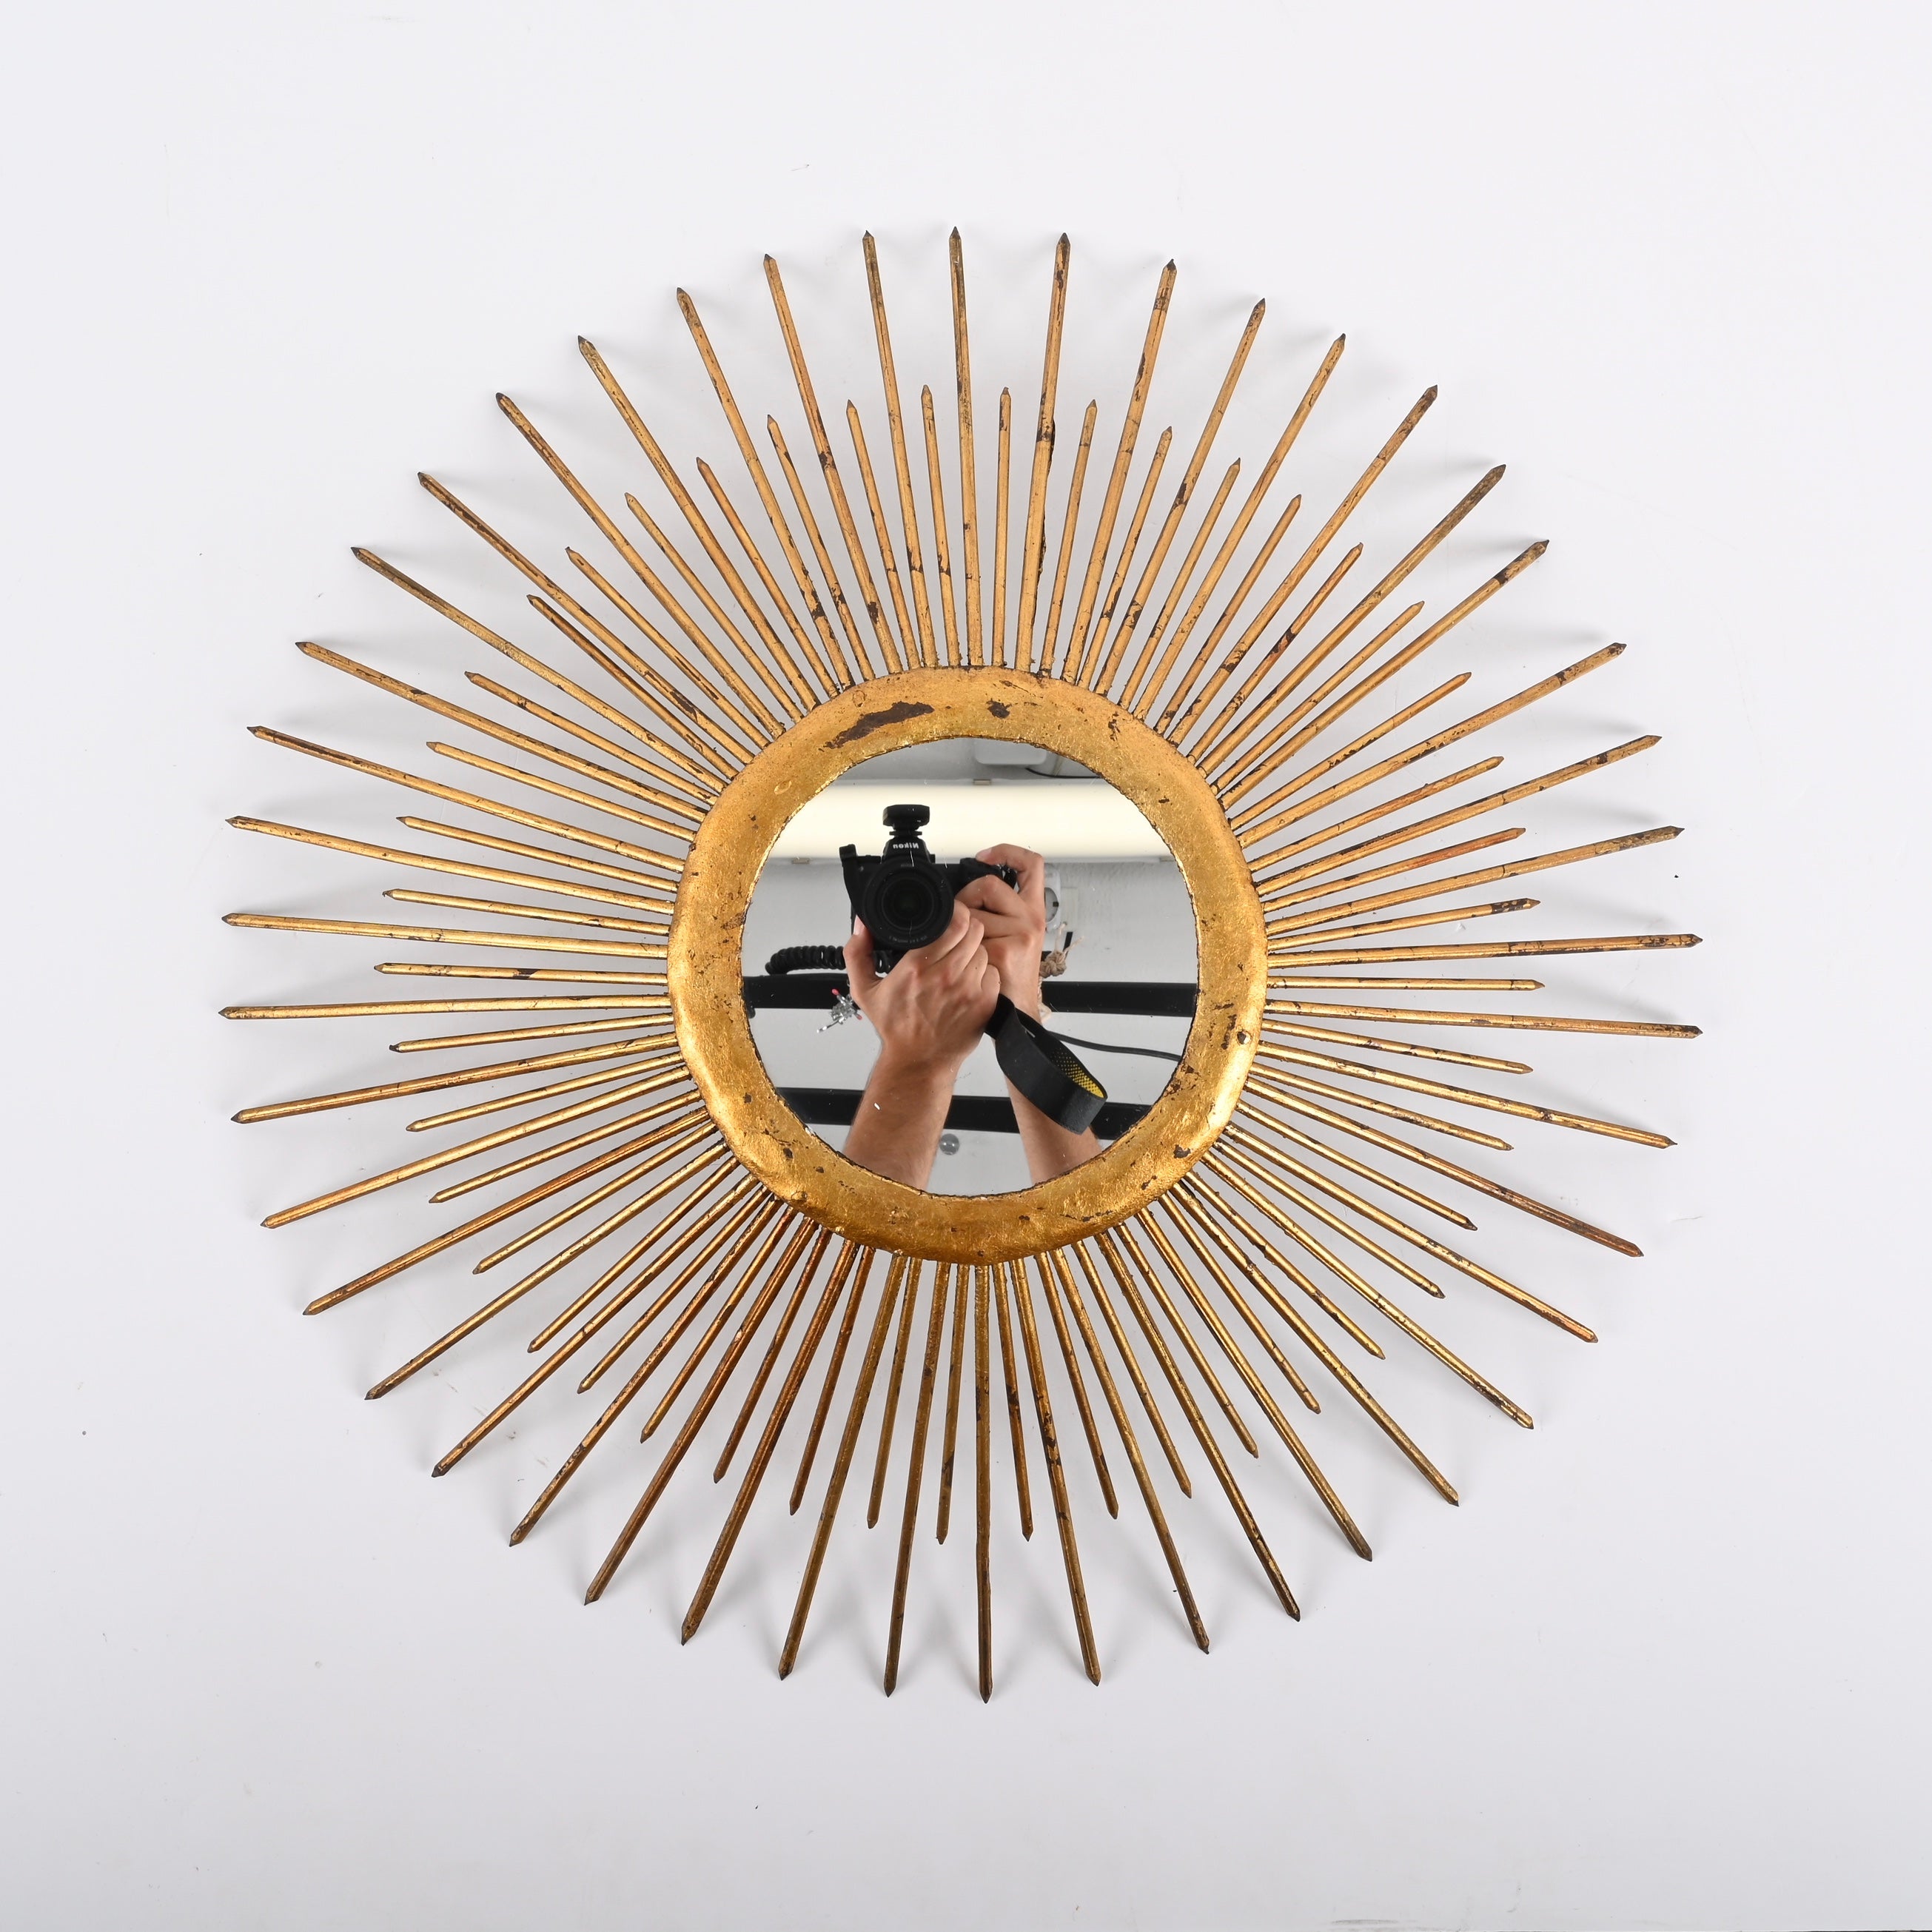 Magnifique miroir vintage en forme de soleil. La structure est en fer doré, avec la particularité d'avoir un système d'éclairage à l'arrière qui permet d'éclairer le miroir par l'arrière, donnant un effet magnifique sur le mur.
Le miroir a été